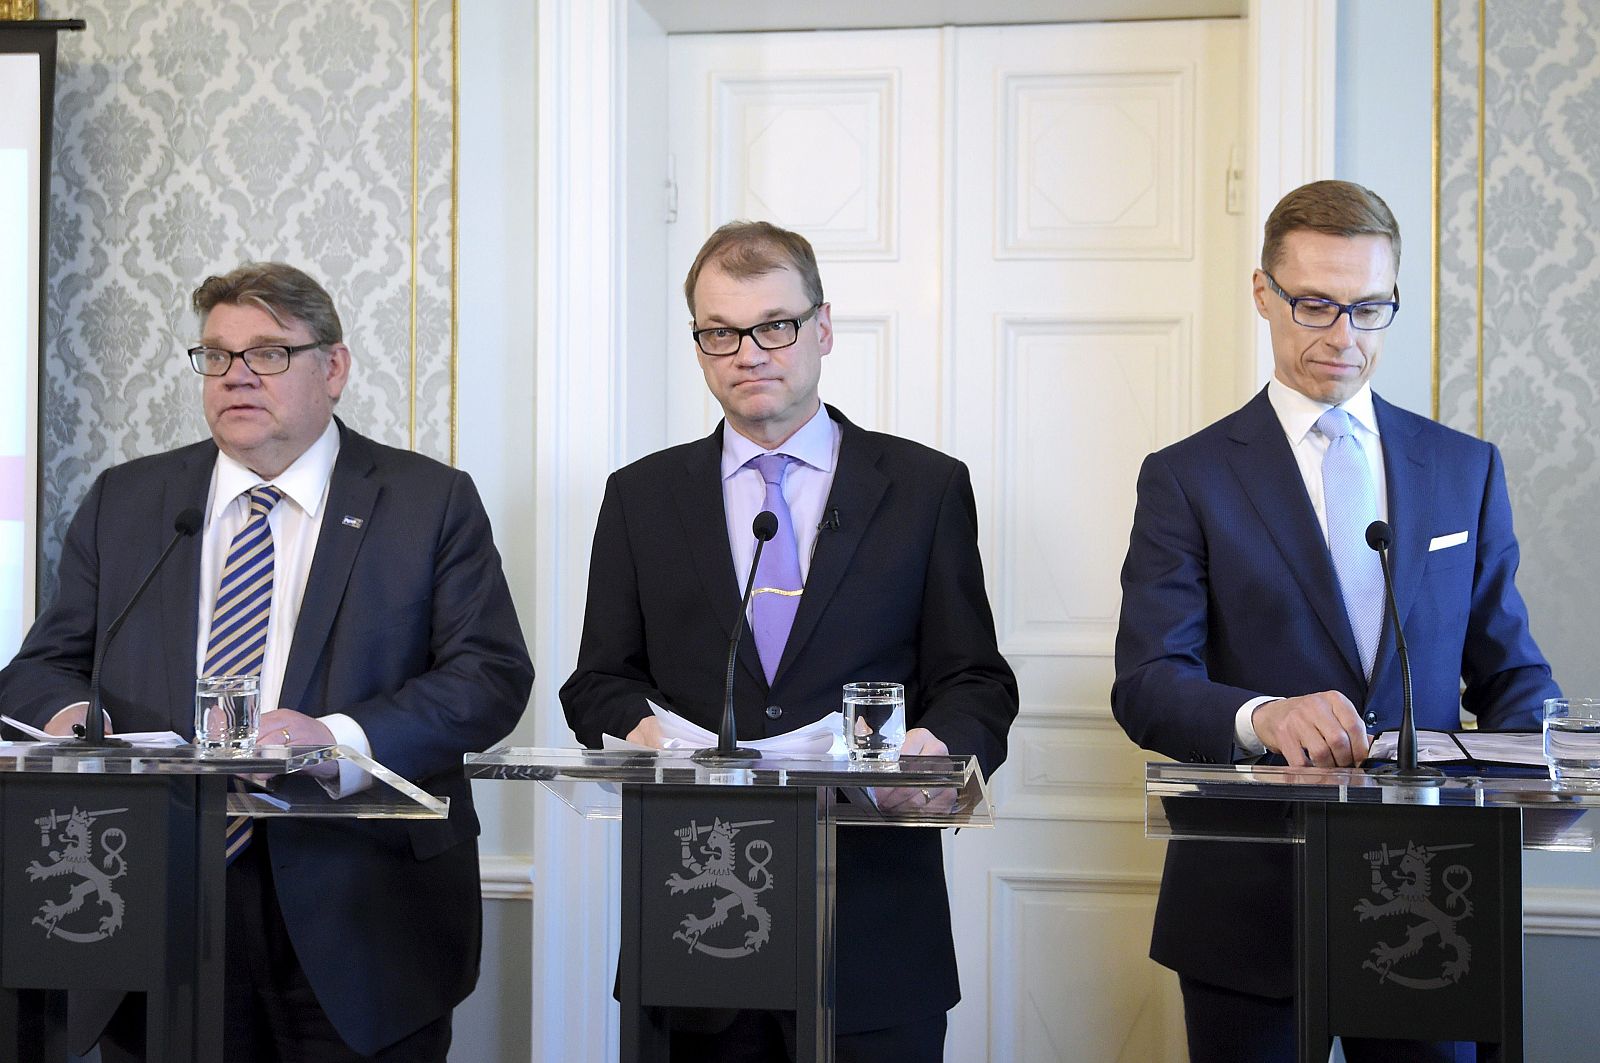 Los líderes de la nueva coalición derechista de Gobierno en Finlandia, de izquierda a derecha Timo Soini, Juha Sipila y Alexander Stubb.